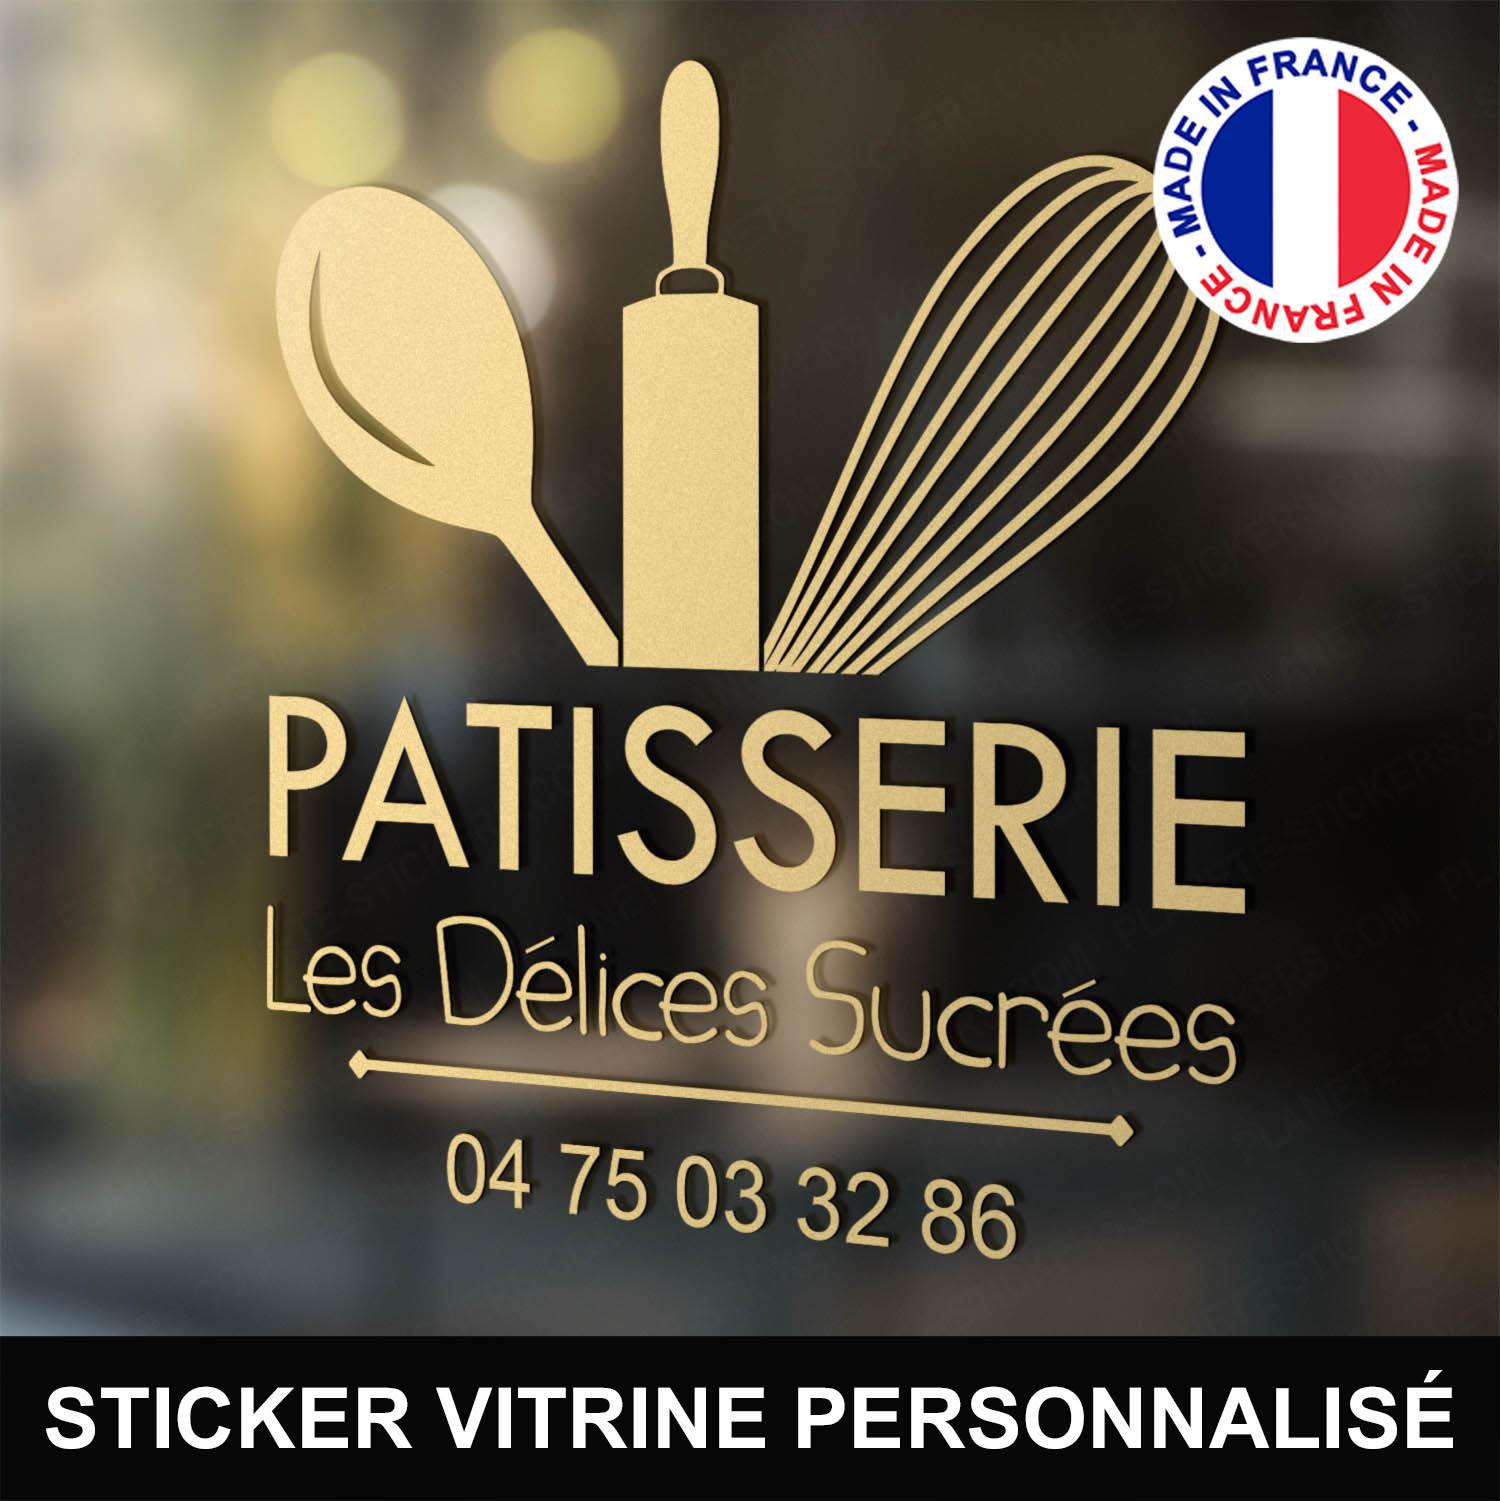 ref4patisserievitrine-stickers-patissier-vitrine-sticker-personnalisé-autocollant-pro-fouet-rouleau-cuilliere-commerce-professionnel